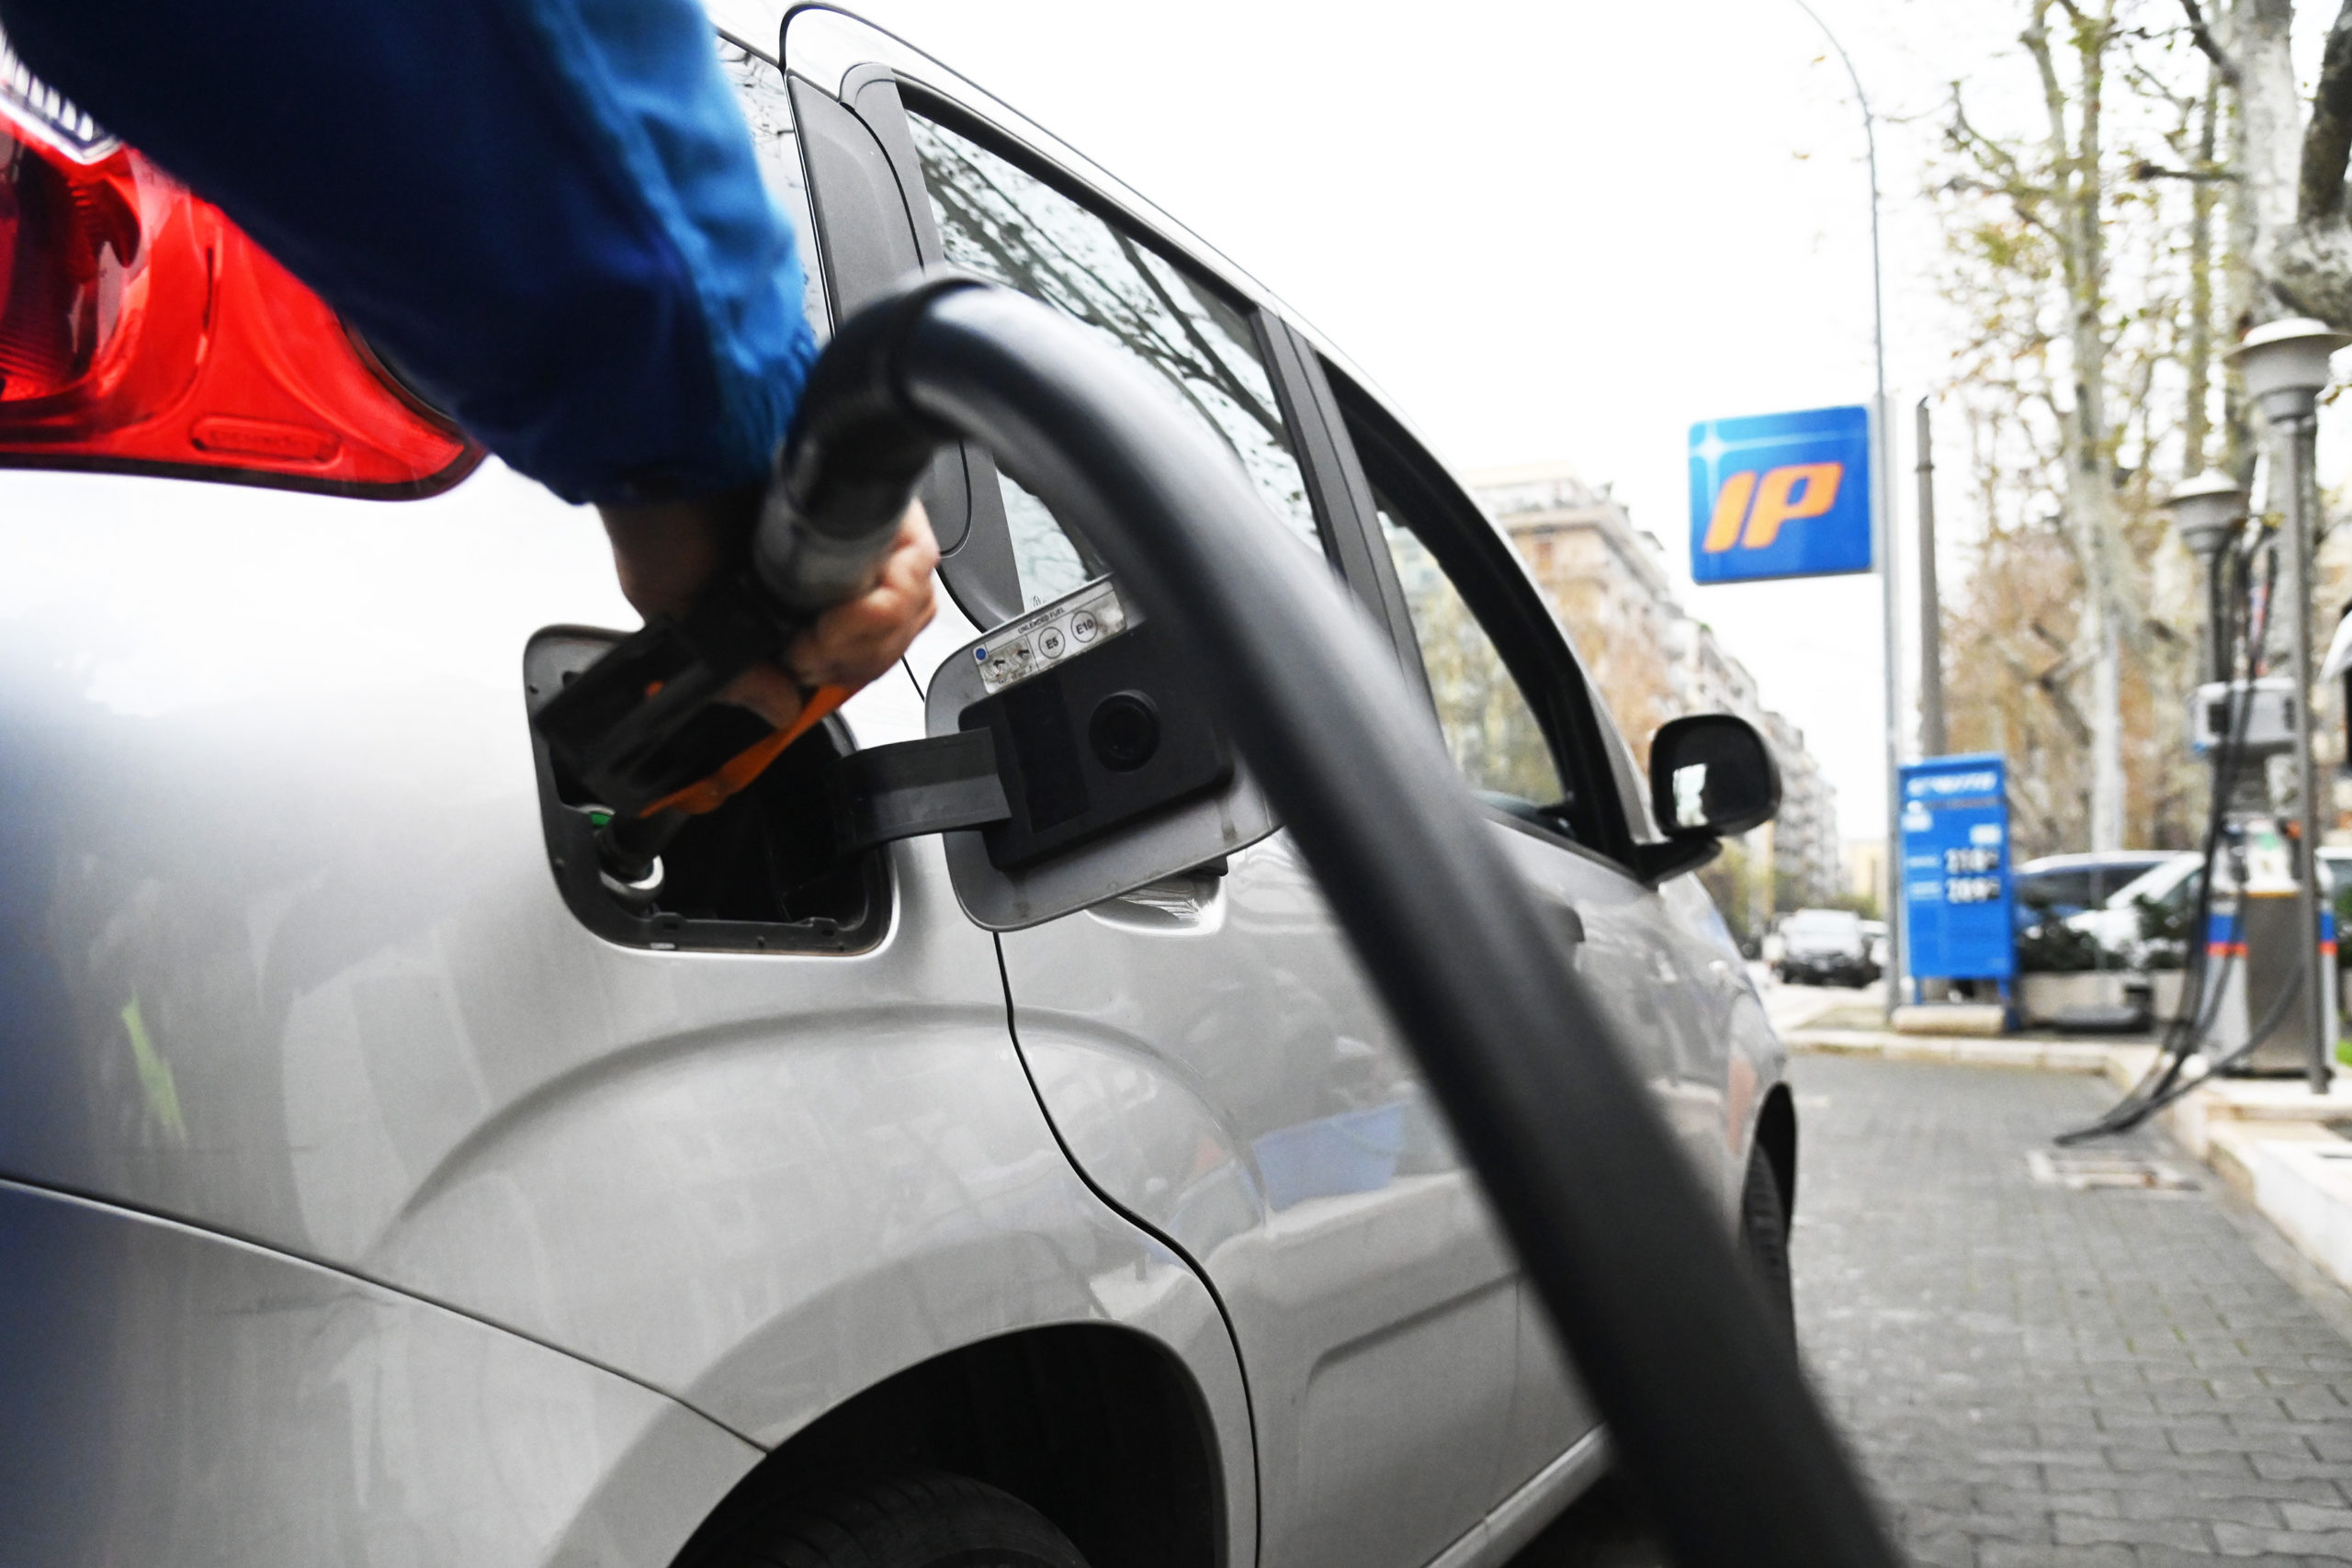 Carburanti, i prezzi tornano a scendere. La benzina al self è a 1,856 euro al litro